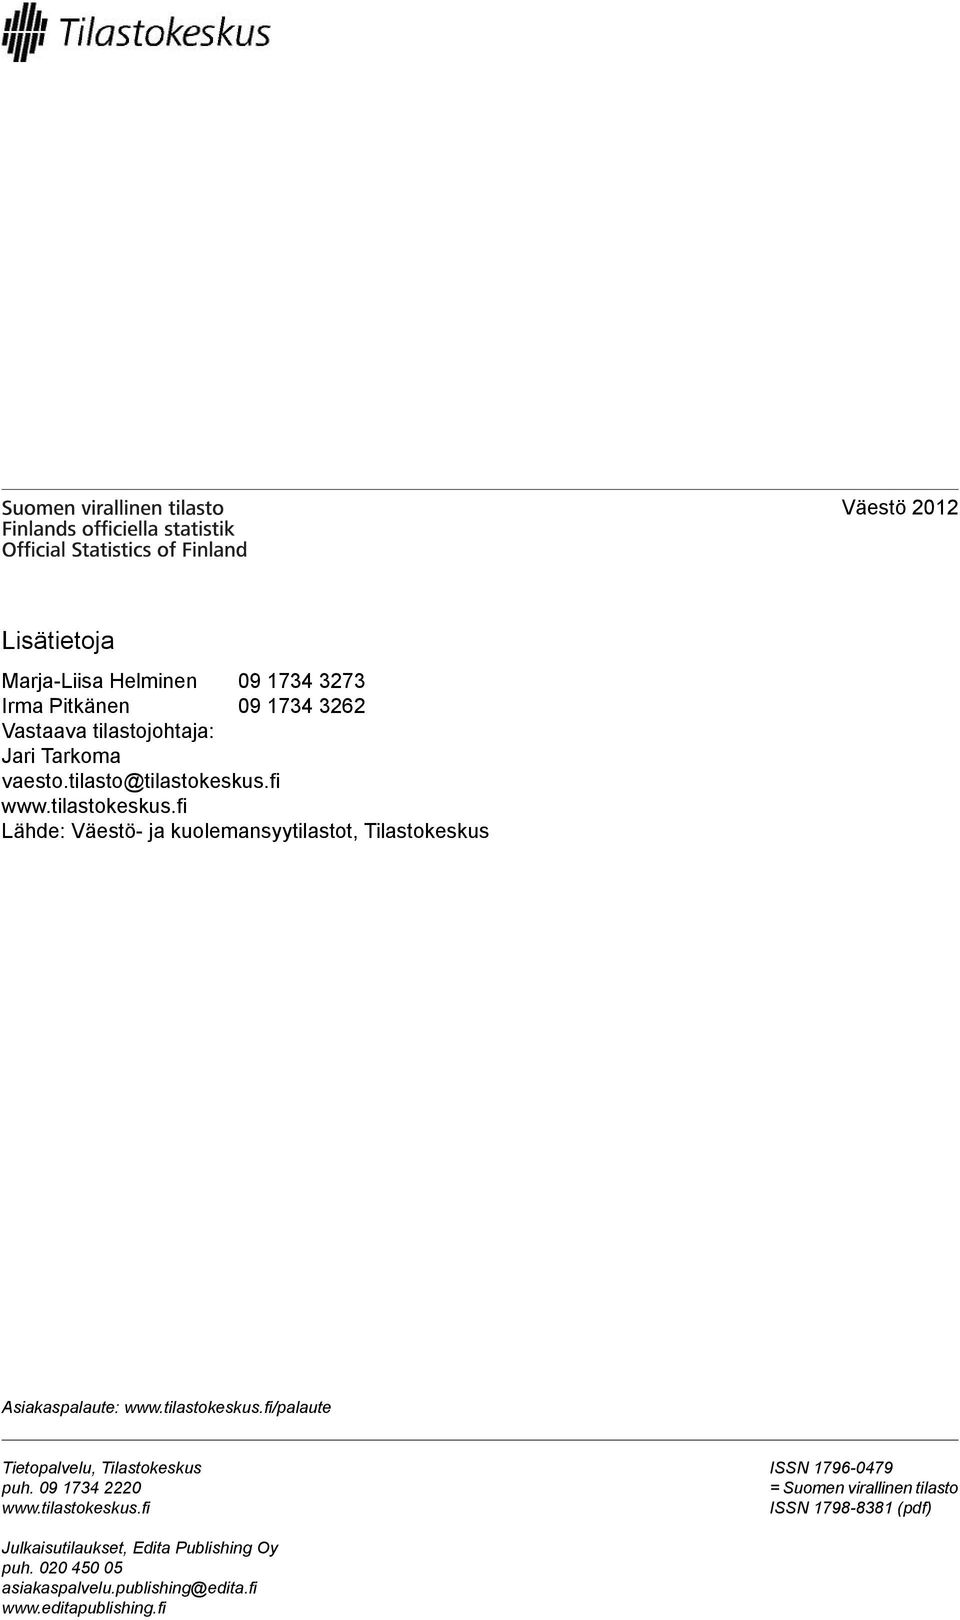 tilastokeskus.fi/palaute Tietopalvelu, Tilastokeskus puh. 09 1734 2220 www.tilastokeskus.fi ISSN 1796-0479 = Suomen virallinen tilasto ISSN 1798-8381 (pdf) Julkaisutilaukset, Edita Publishing Oy puh.